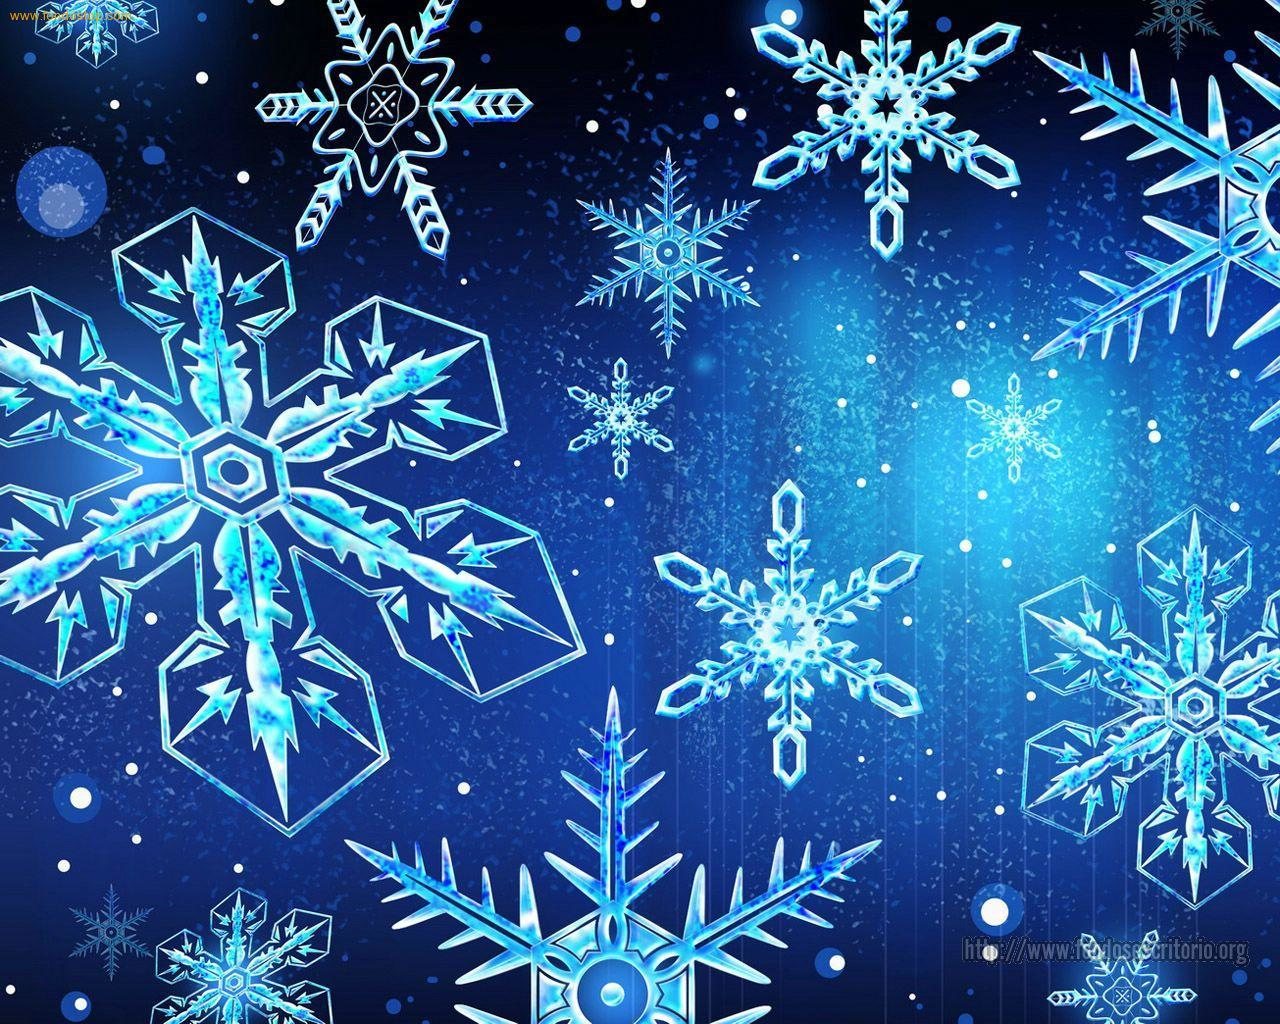 Los cristales de nieve se han convertido en un verdadero icono del invierno.